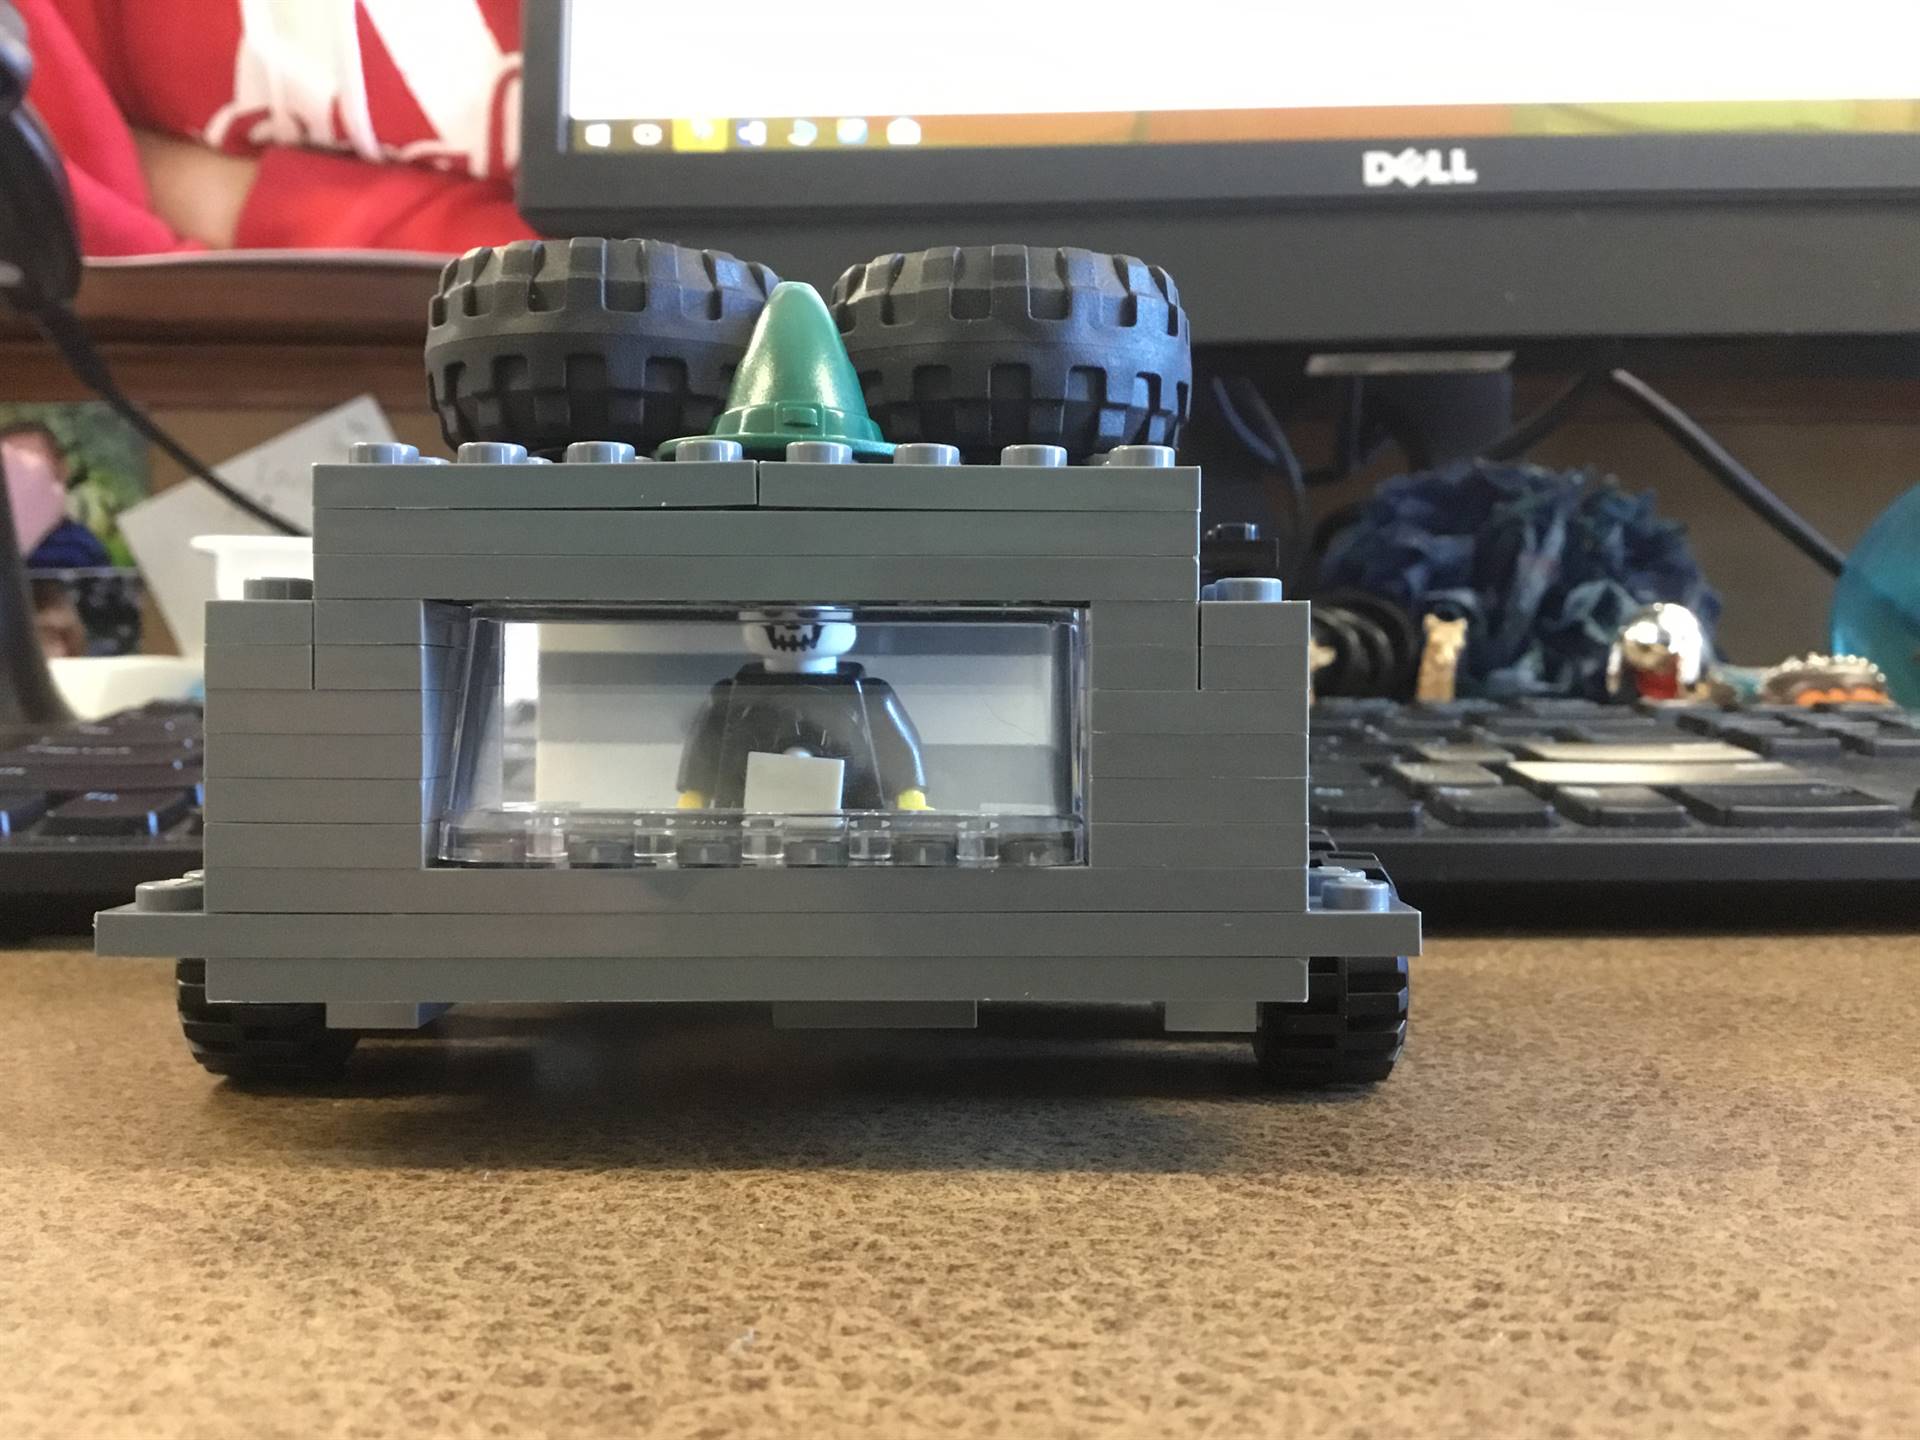 Lego car